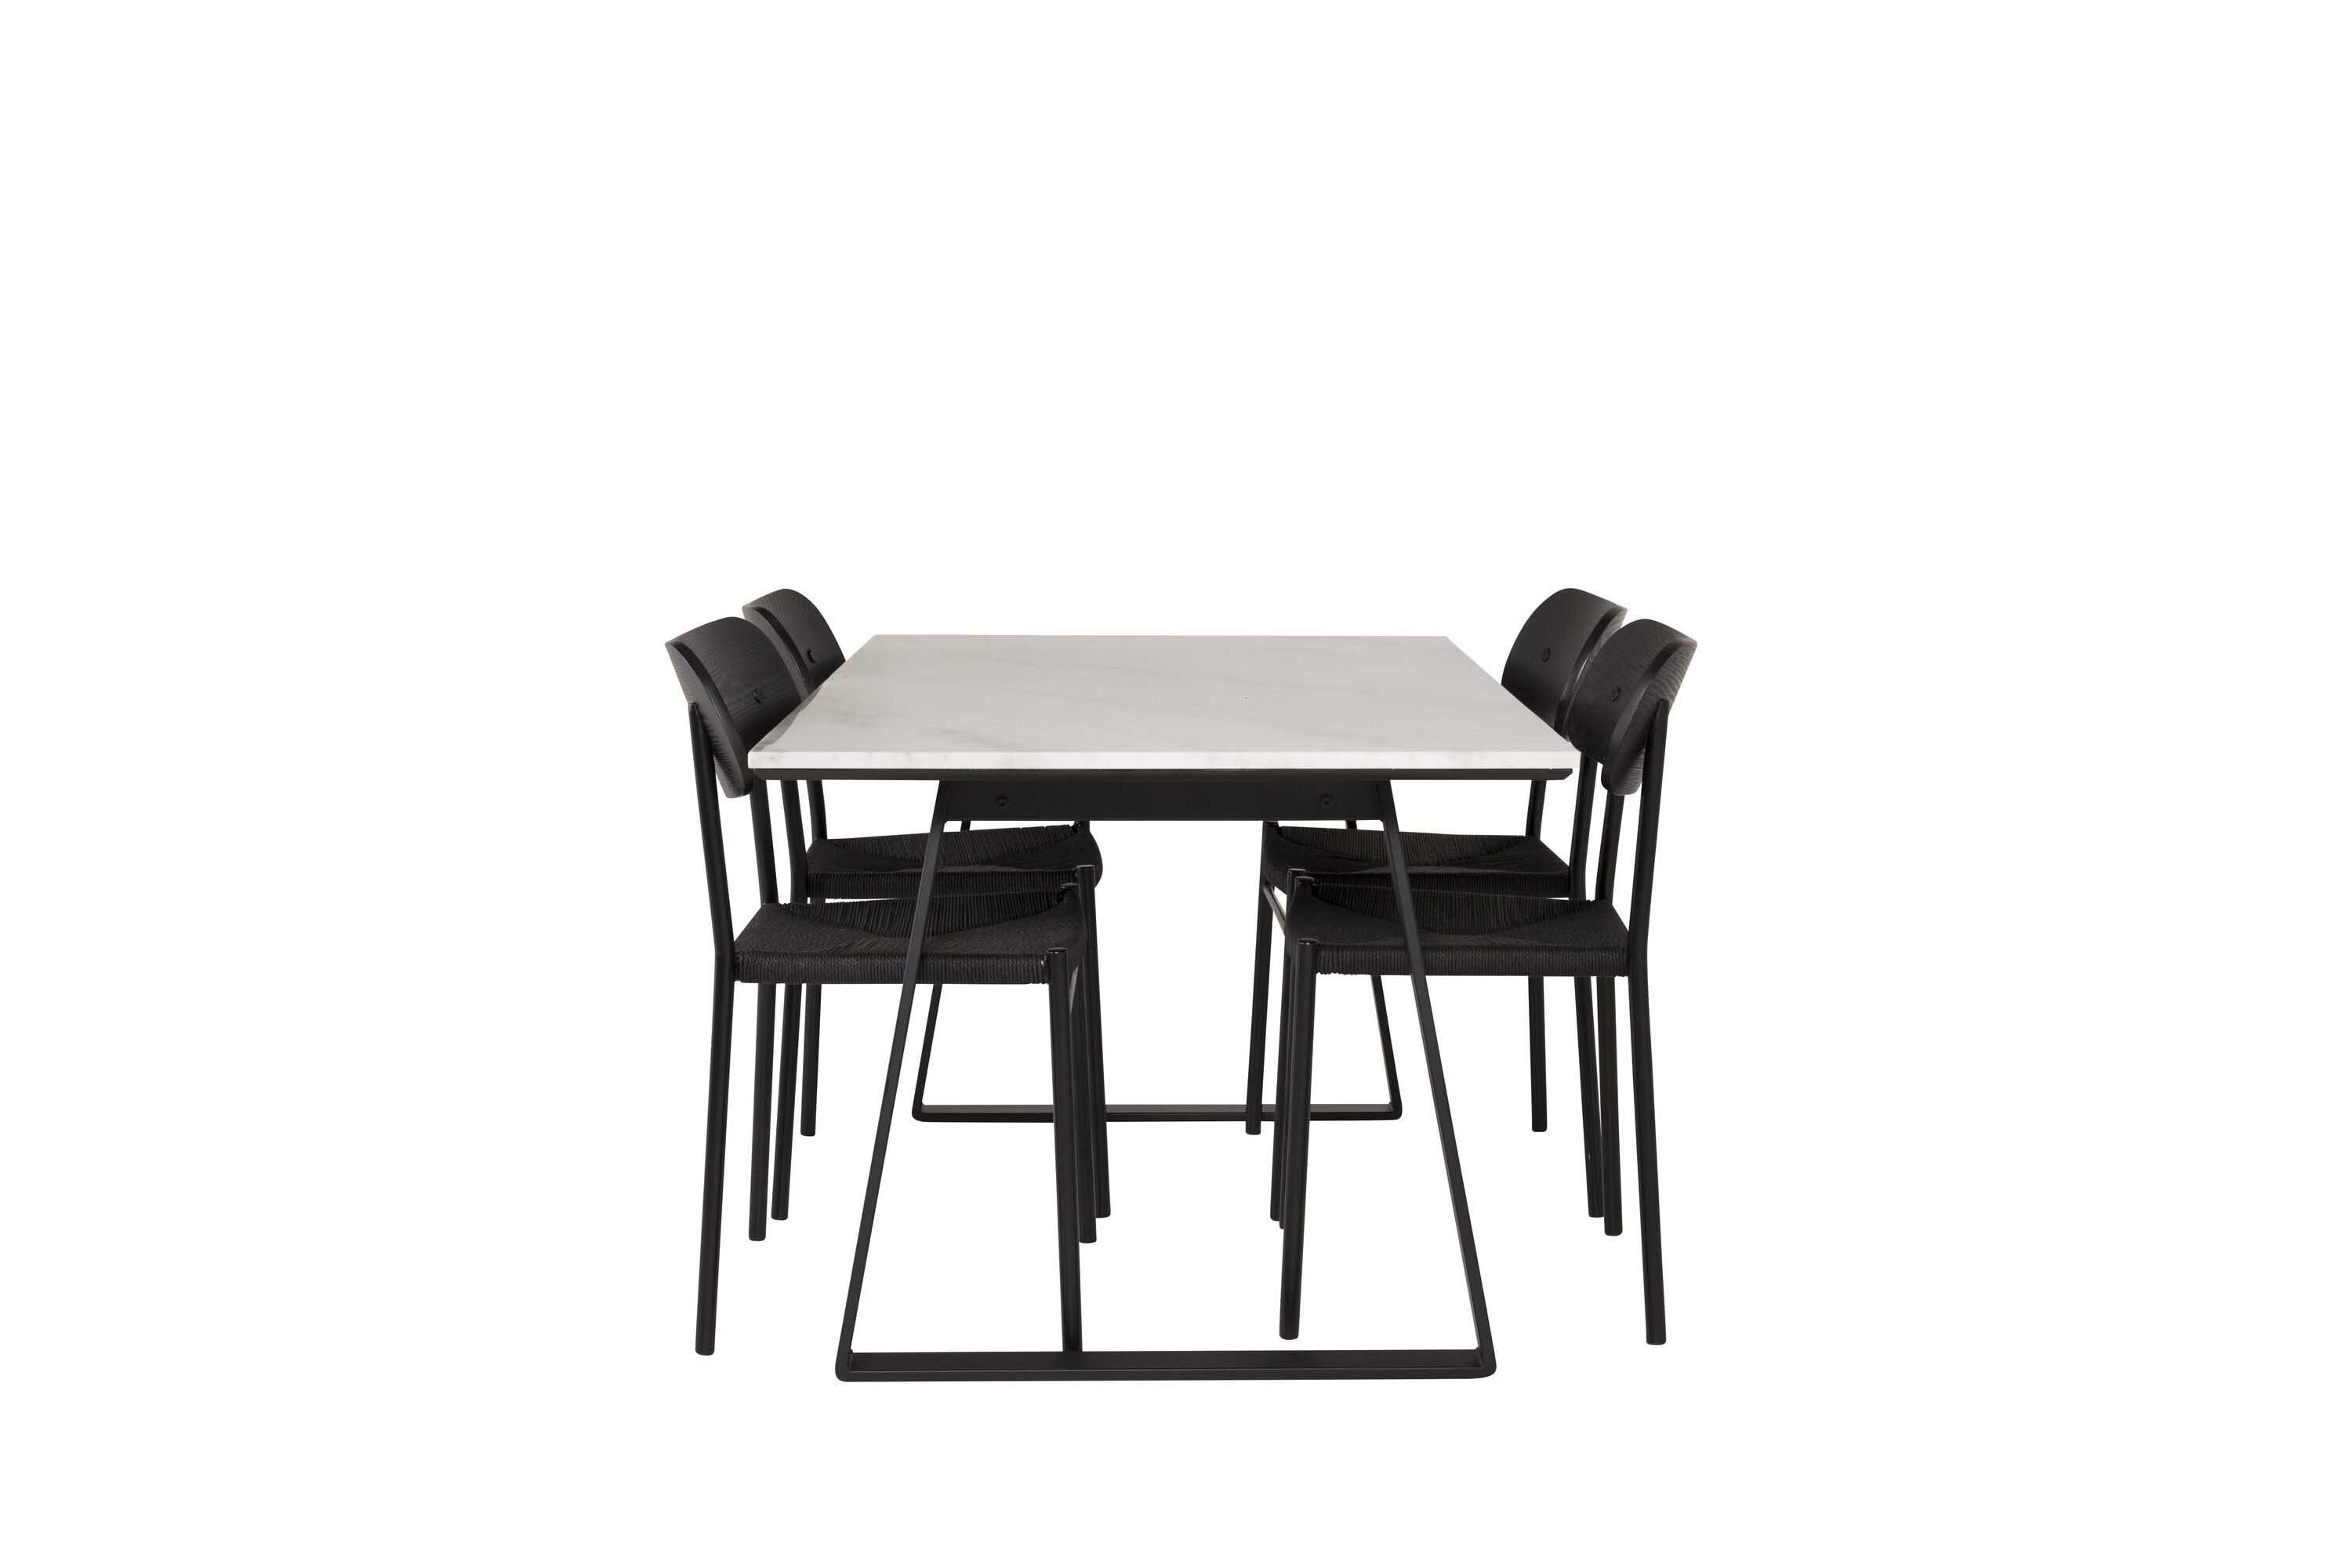 Venture Design Estelle & Polly spisebordssæt Hvid/sort 4 st stole & borde 140 x 90 cm